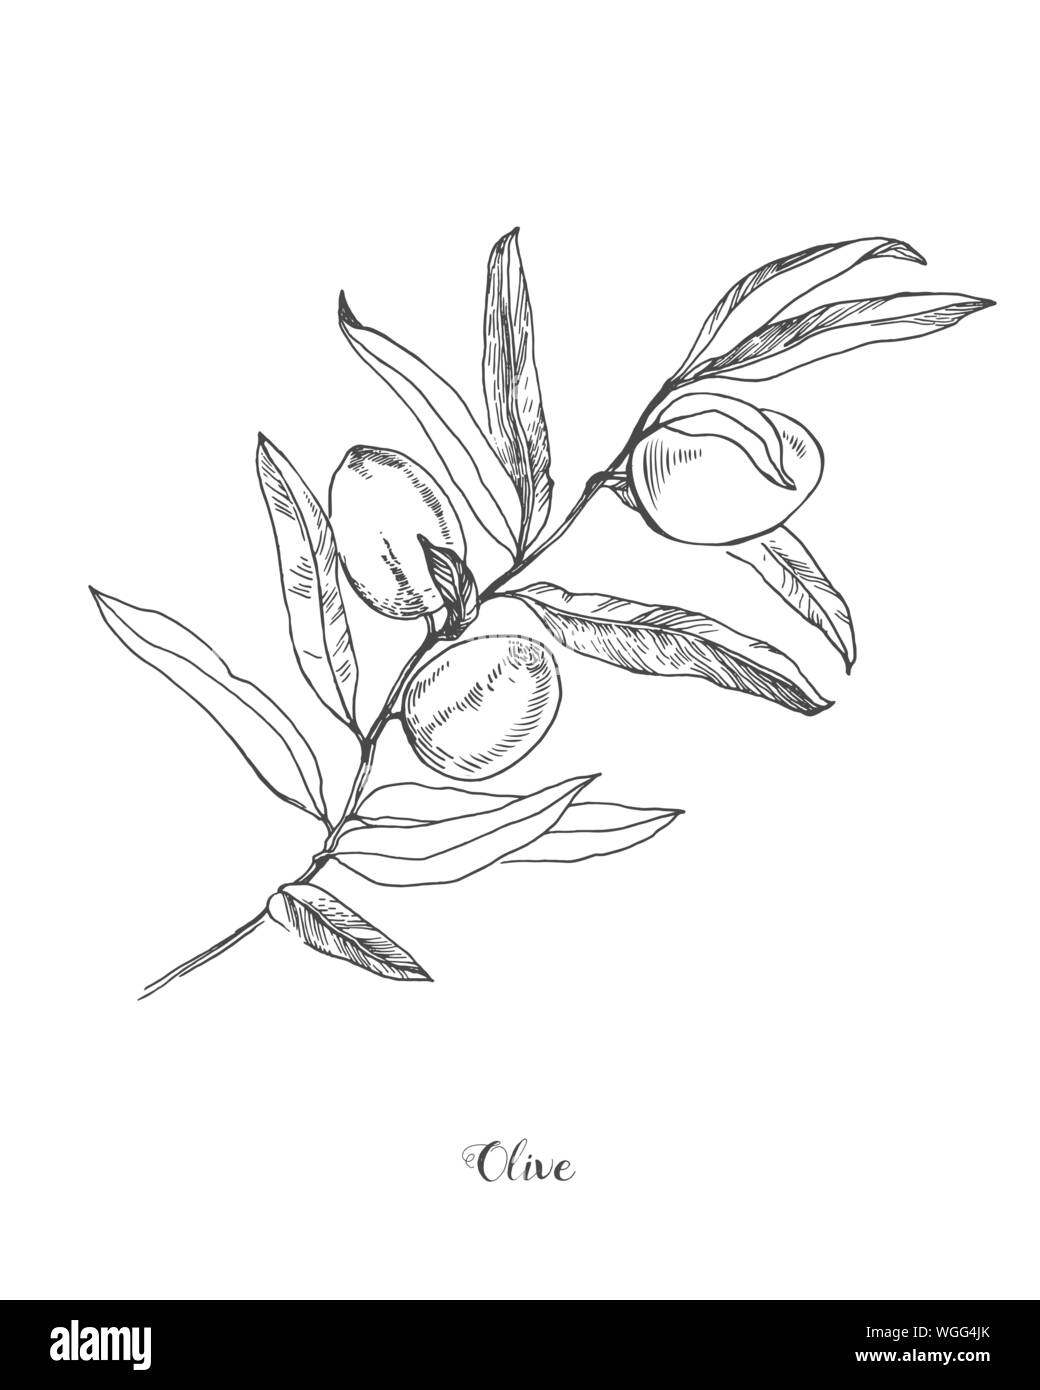 La main détaillée vector illustration noir et blanc de l'olive avec des feuilles. Illustration botanique de l'olive branch Illustration de Vecteur